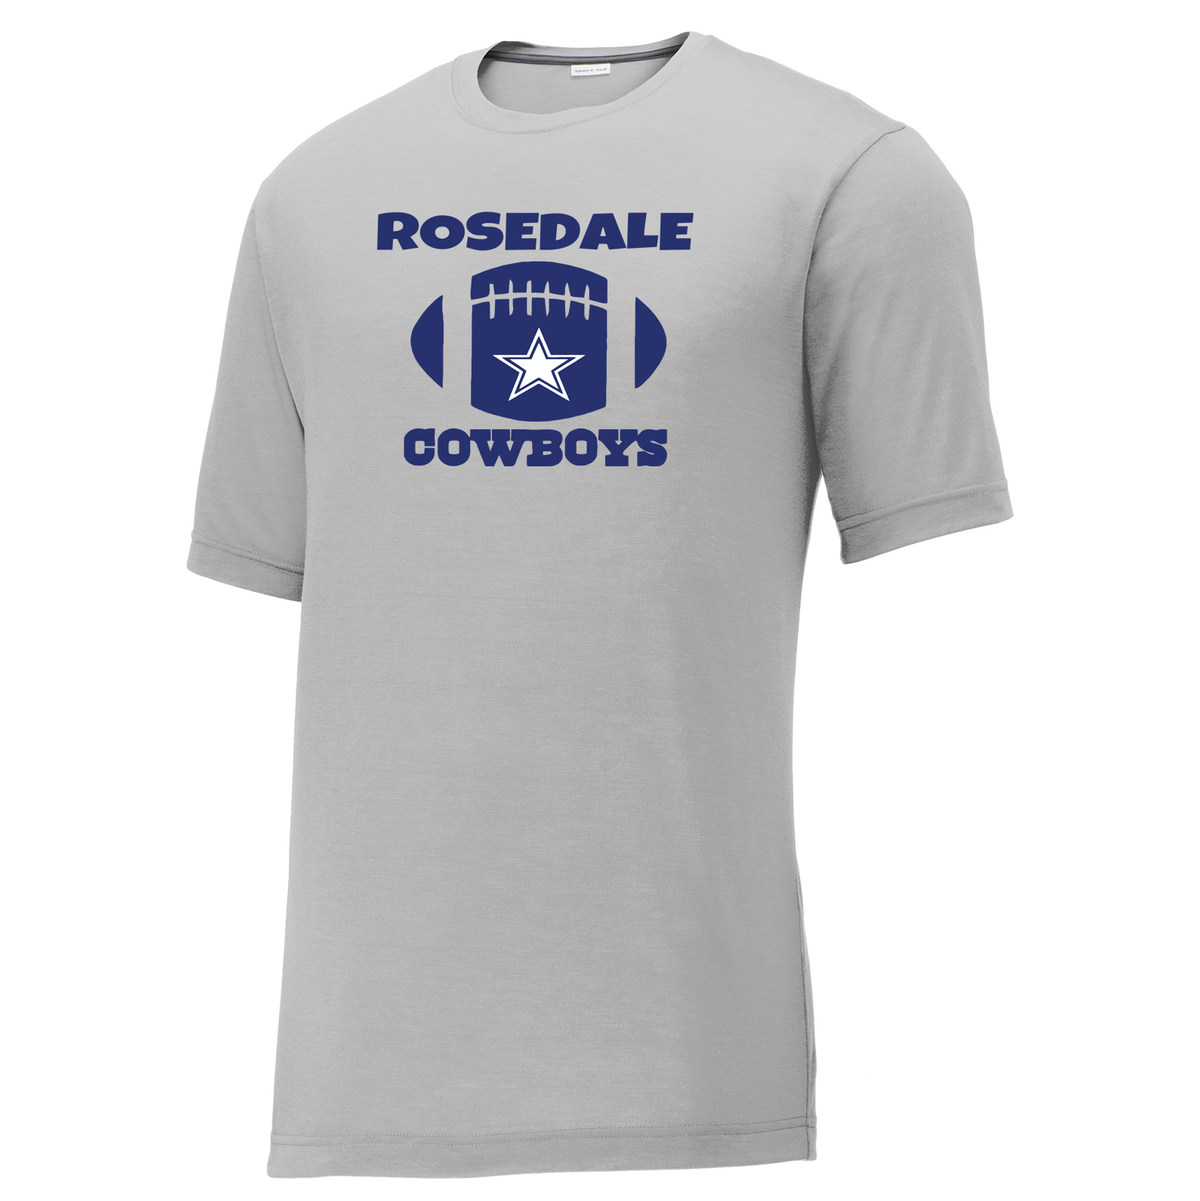 Rosedale Cowboys CottonTouch Performance T-Shirt